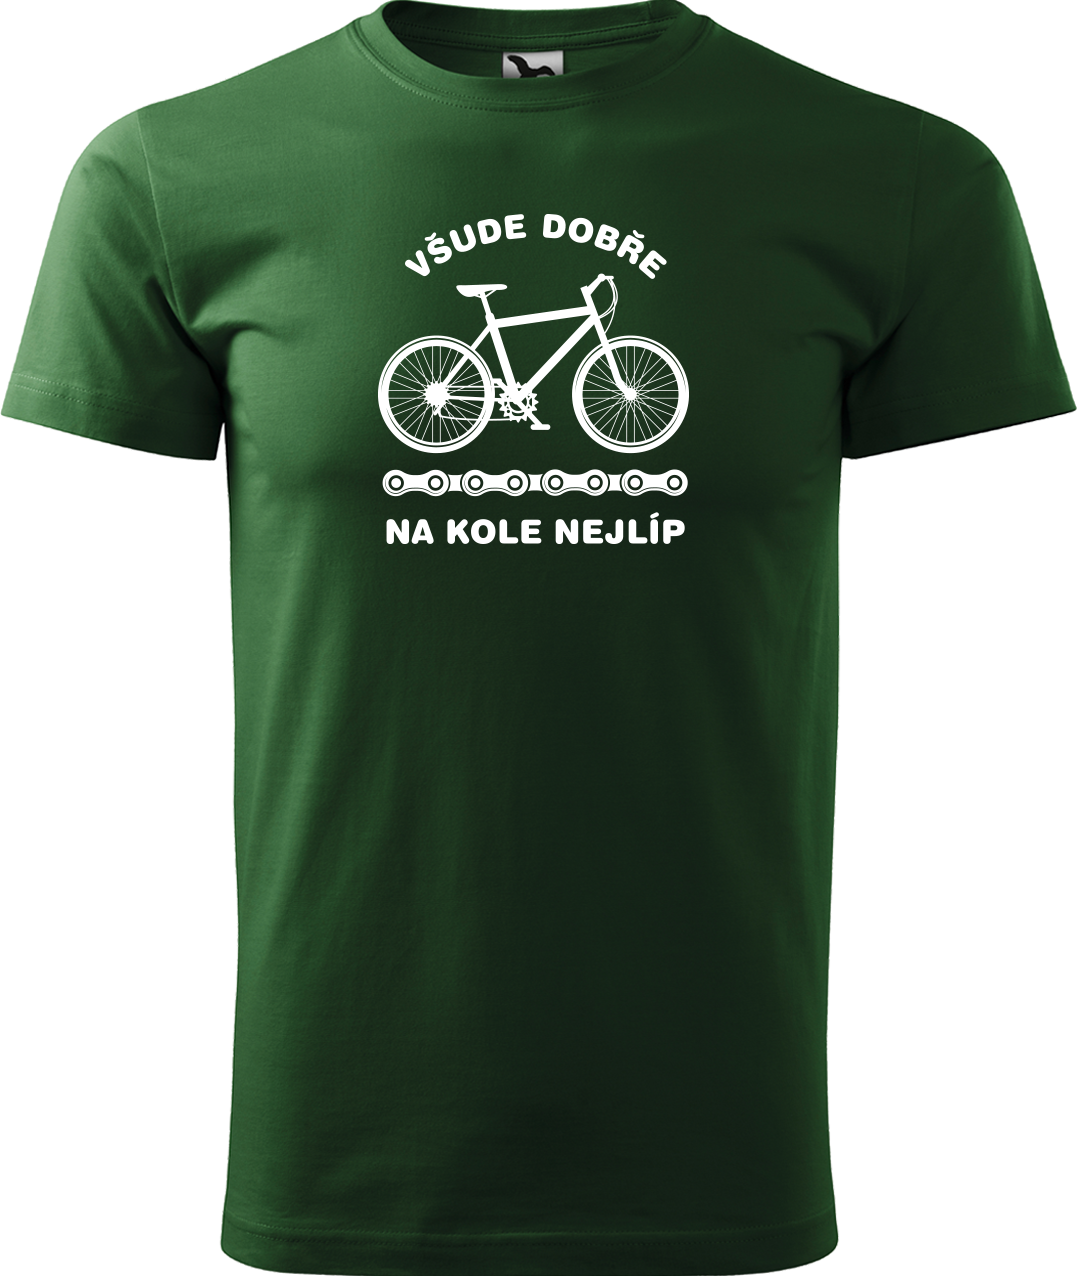 Pánské tričko s kolem - Všude dobře, na kole nejlíp Velikost: XL, Barva: Lahvově zelená (06)